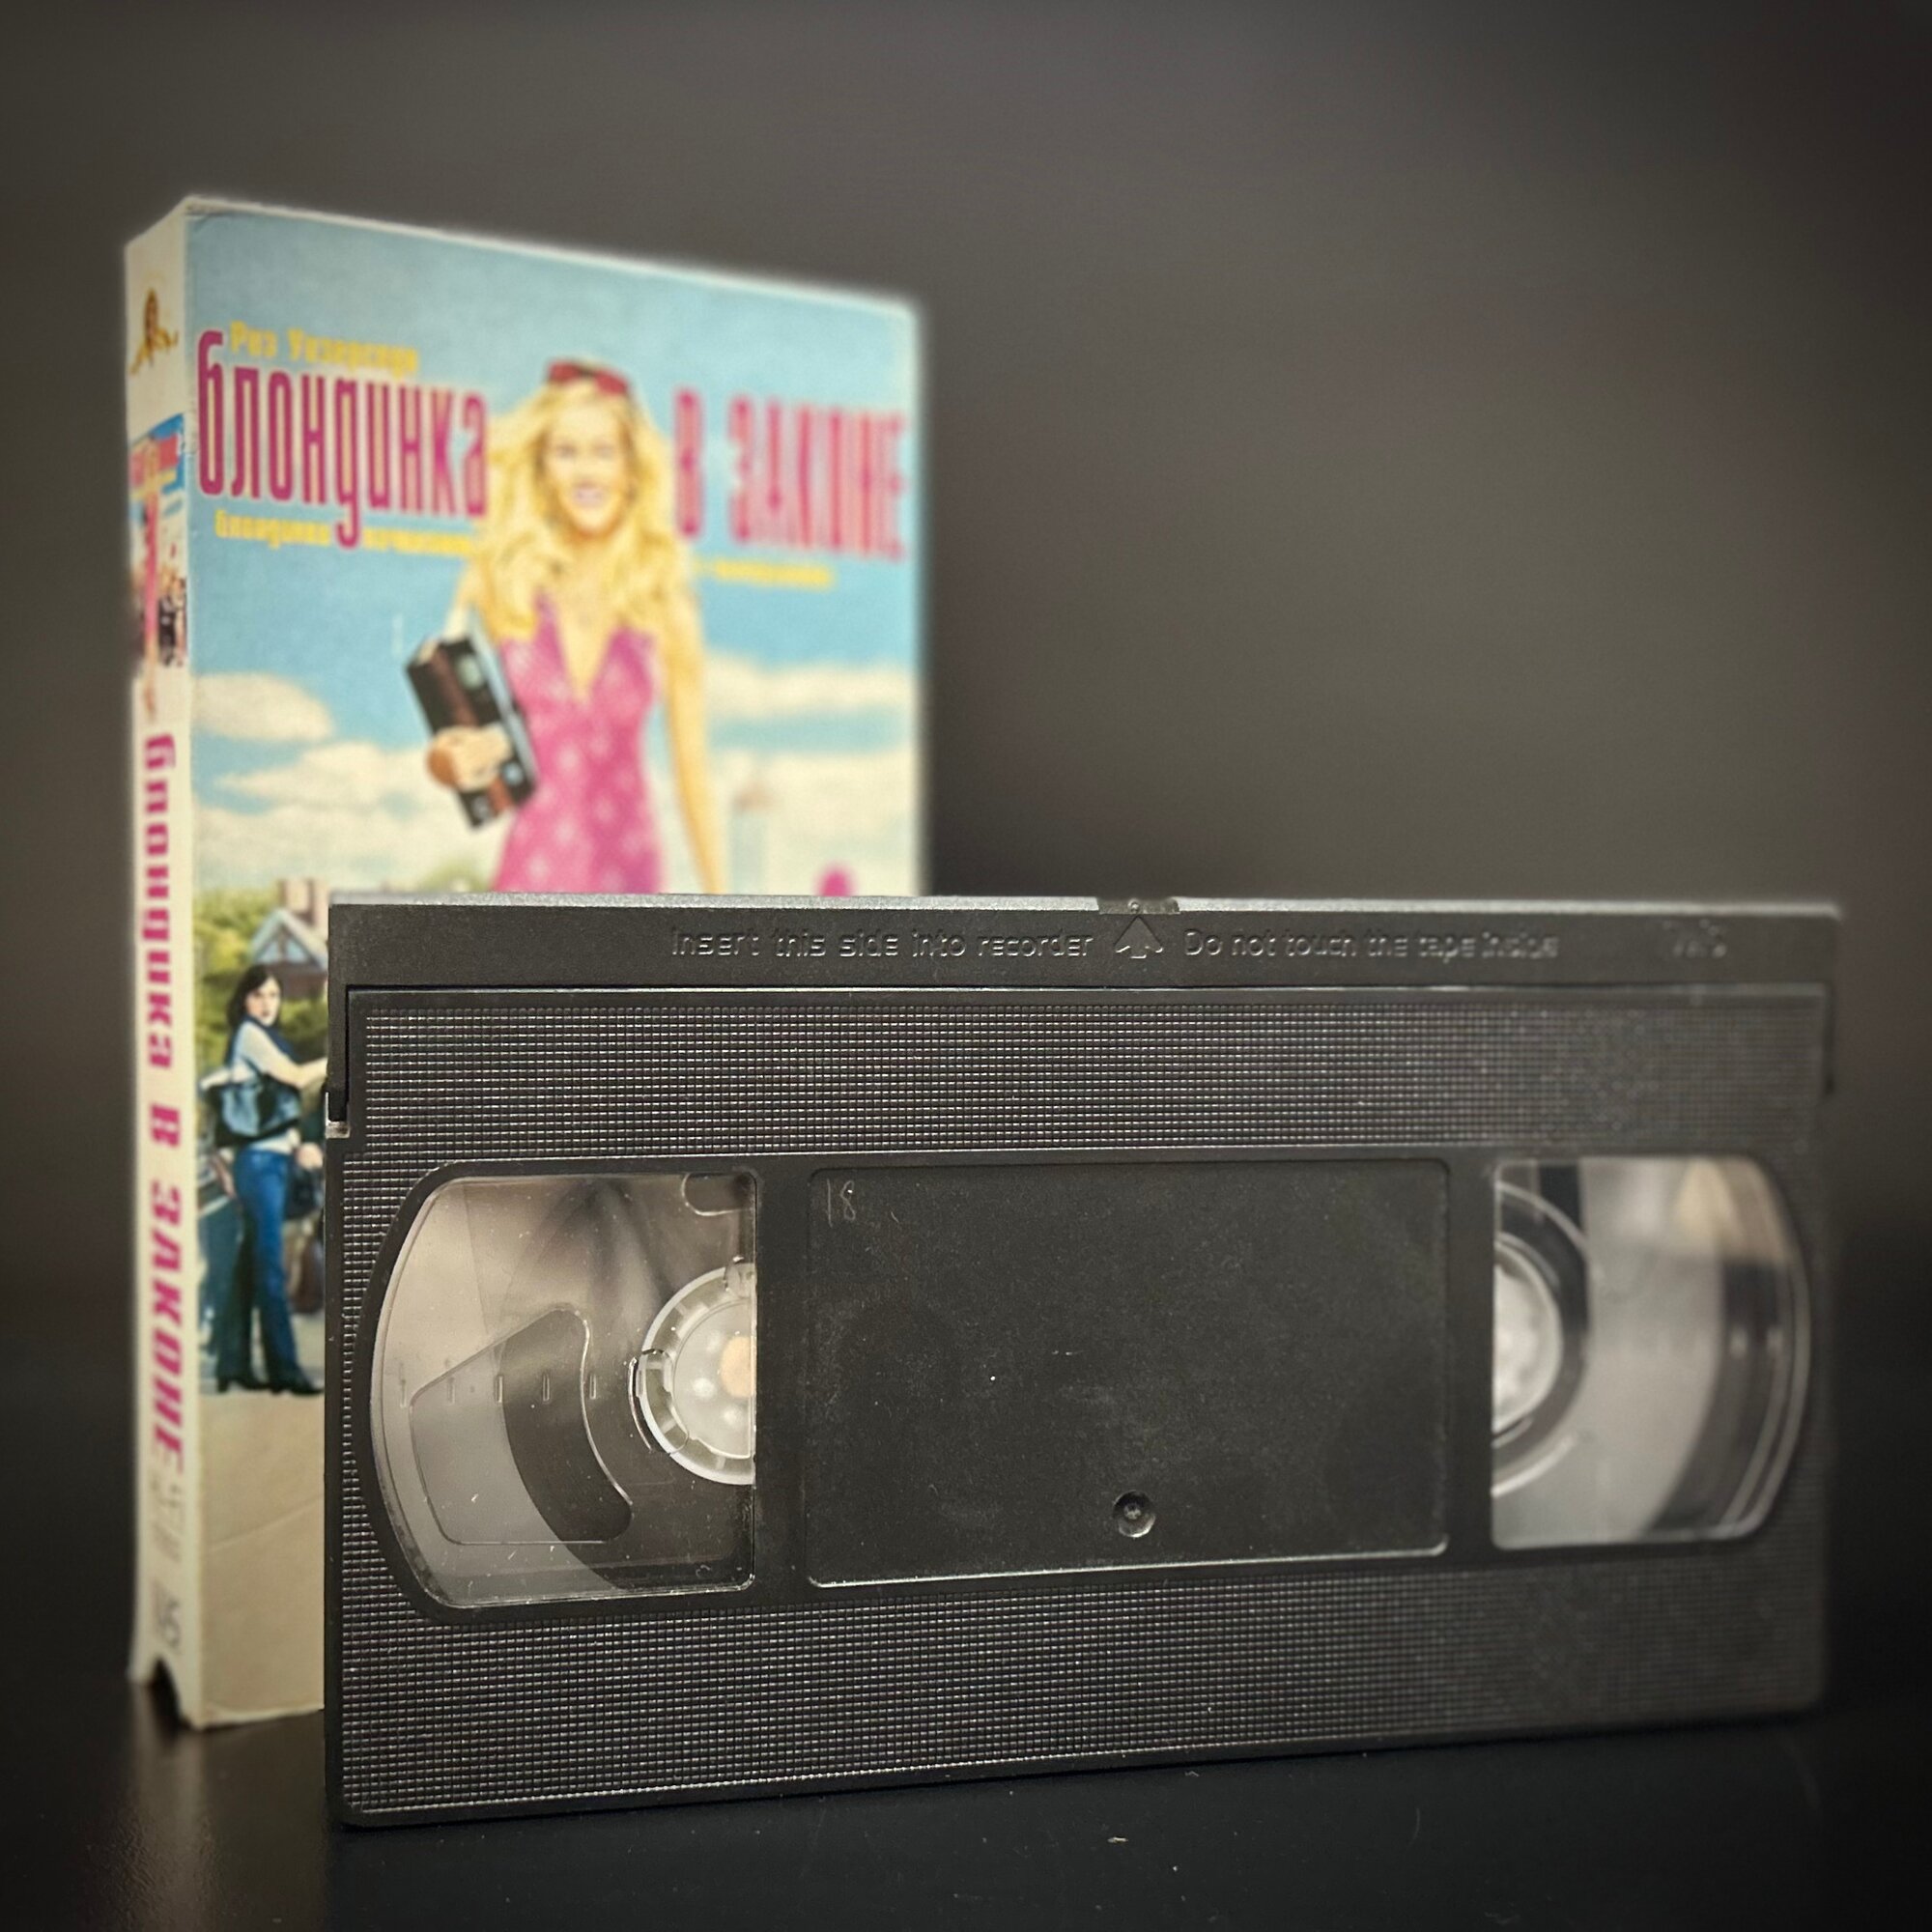 Видеокассета VHS-кассета "Блондинка в законе". Риз Уизерспун. 2001 г.